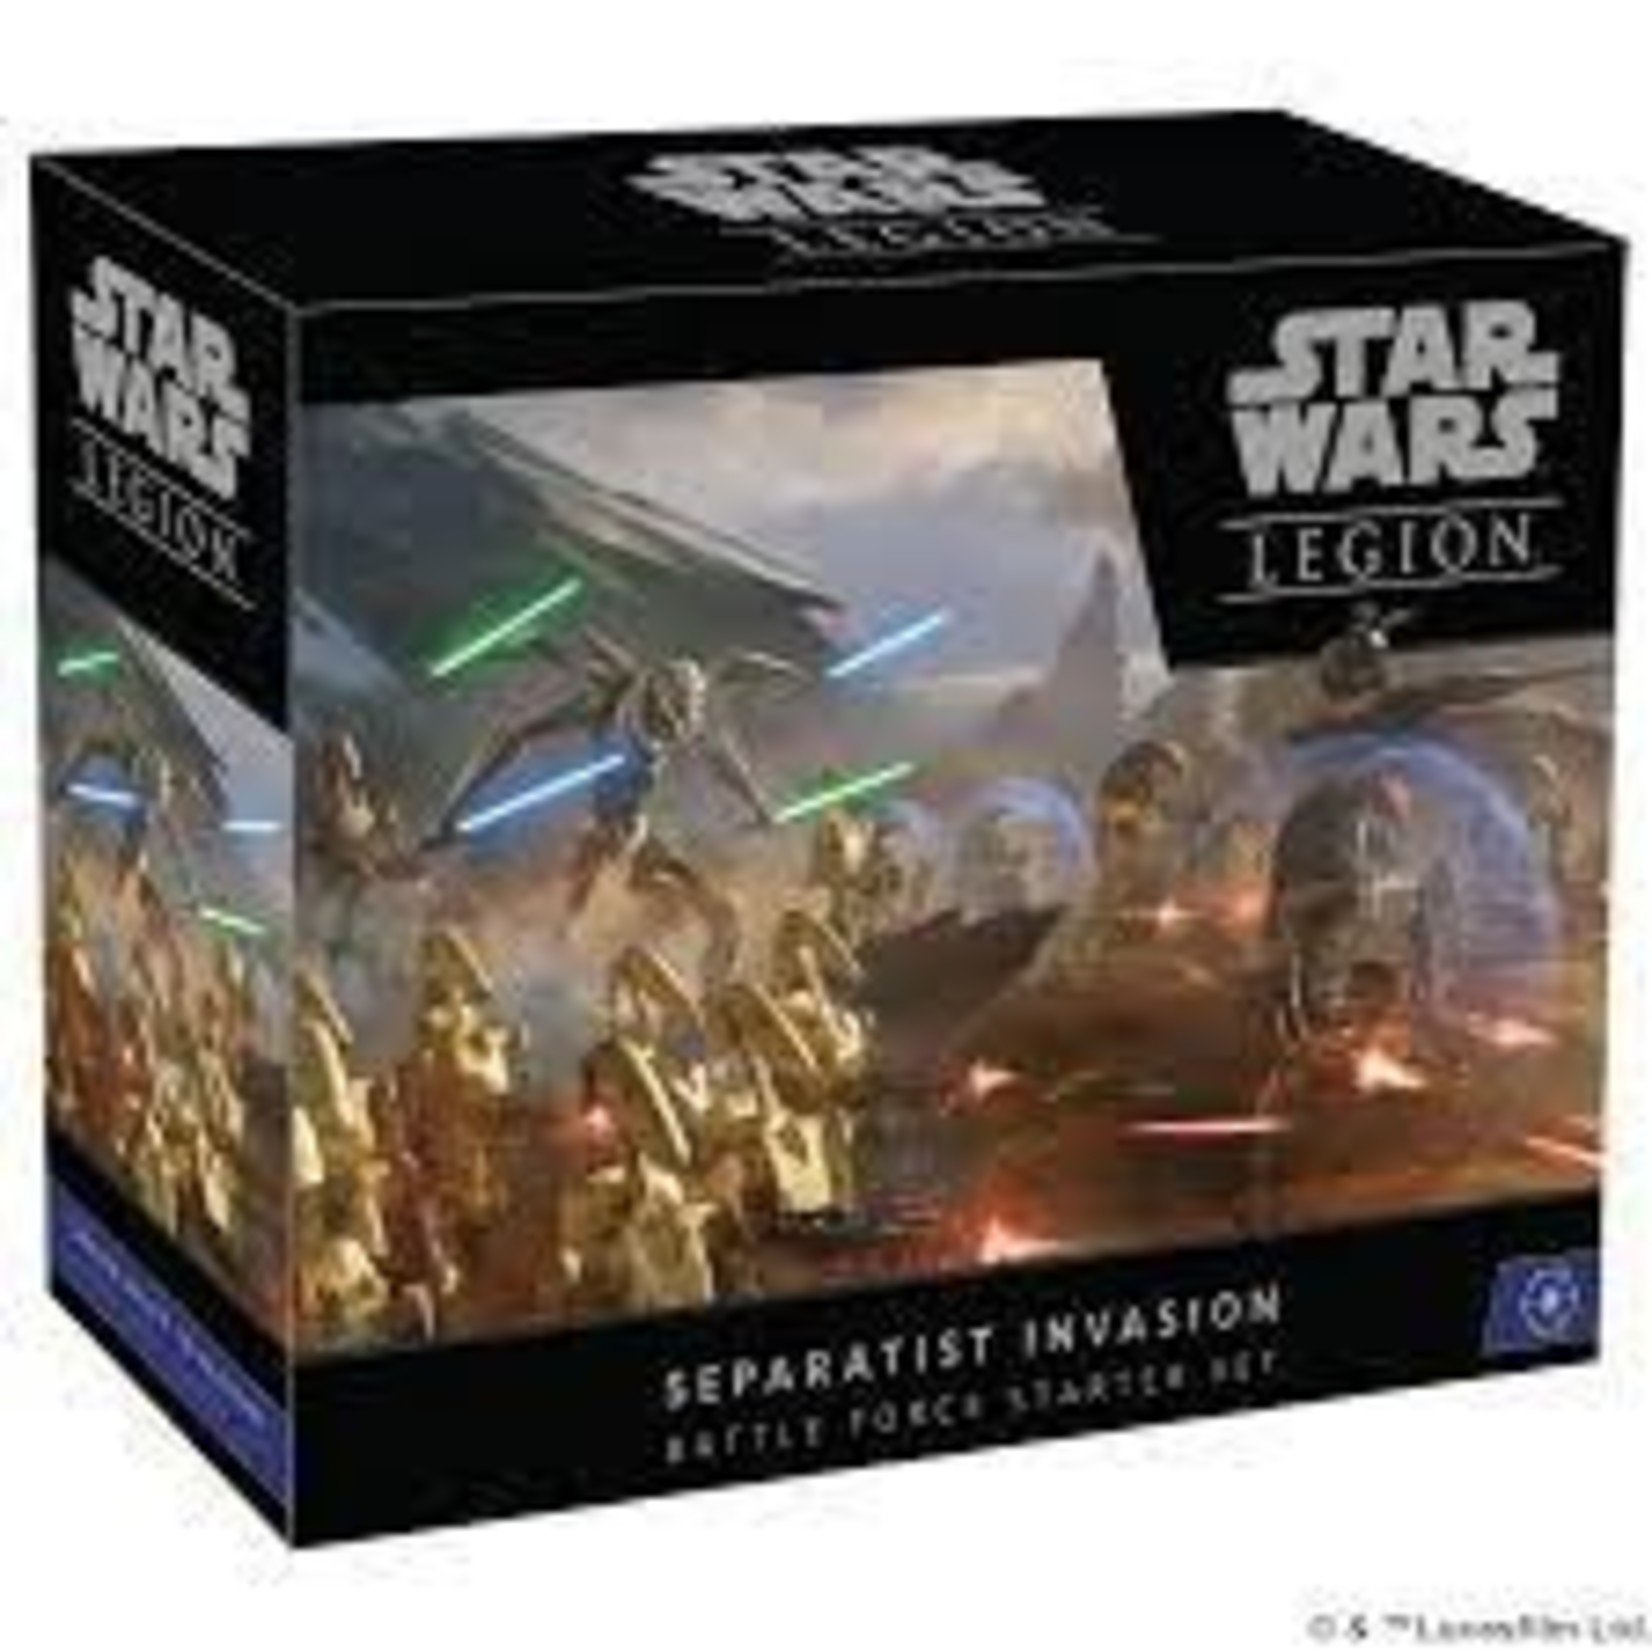 Star Wars Star Wars: Legion Separatist Invasion Force